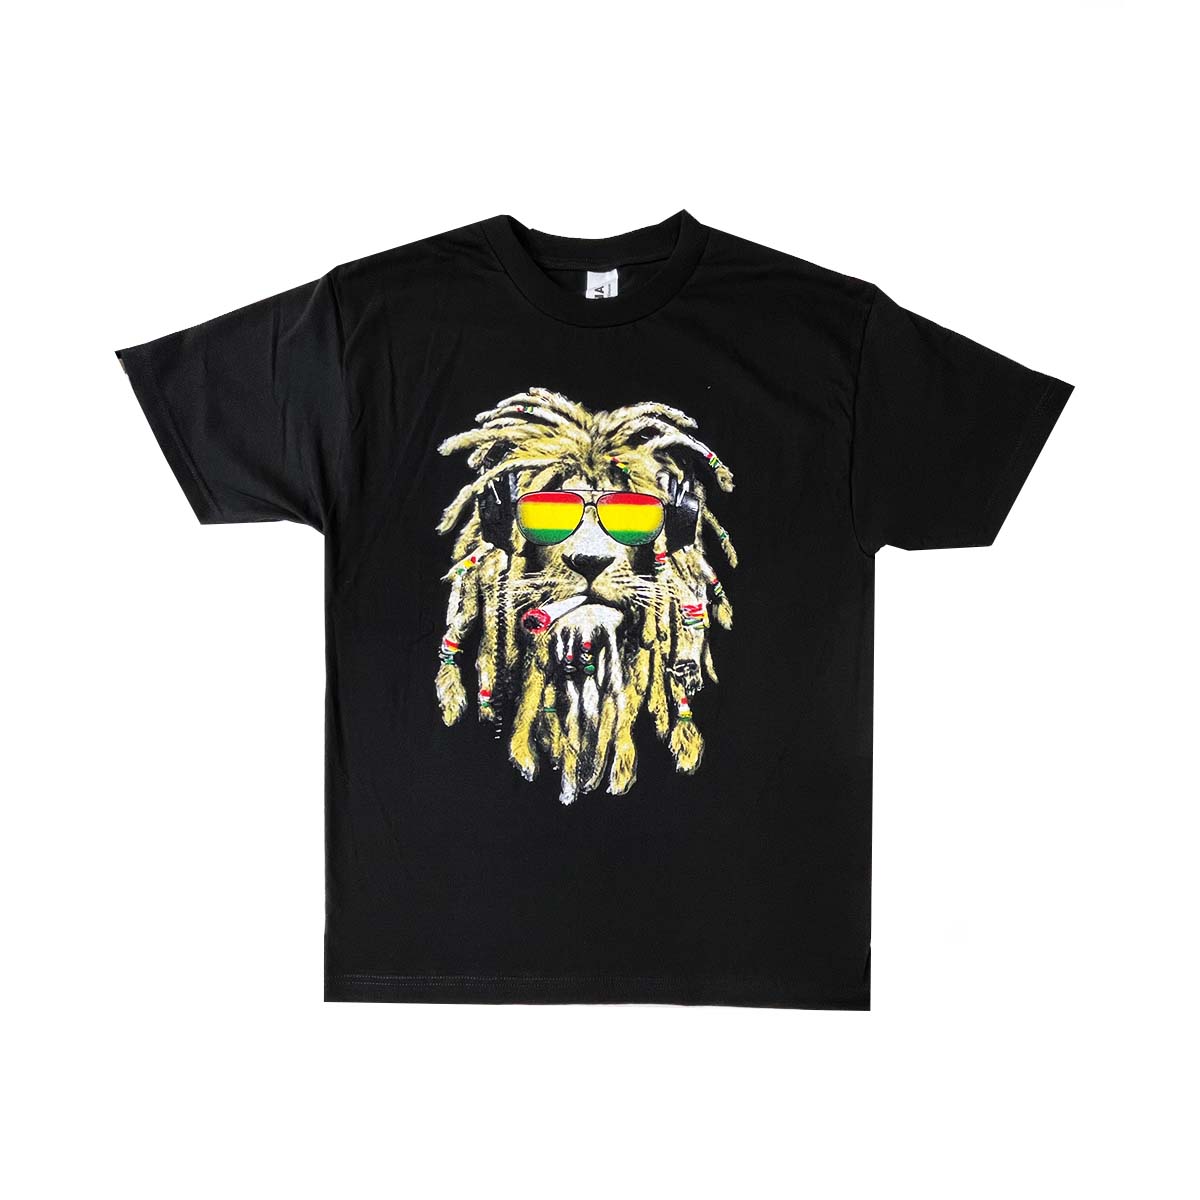 Camiseta Cool Lion 100% Algodón, Pack de 5 Unidades, S, M, L, XL, XXL